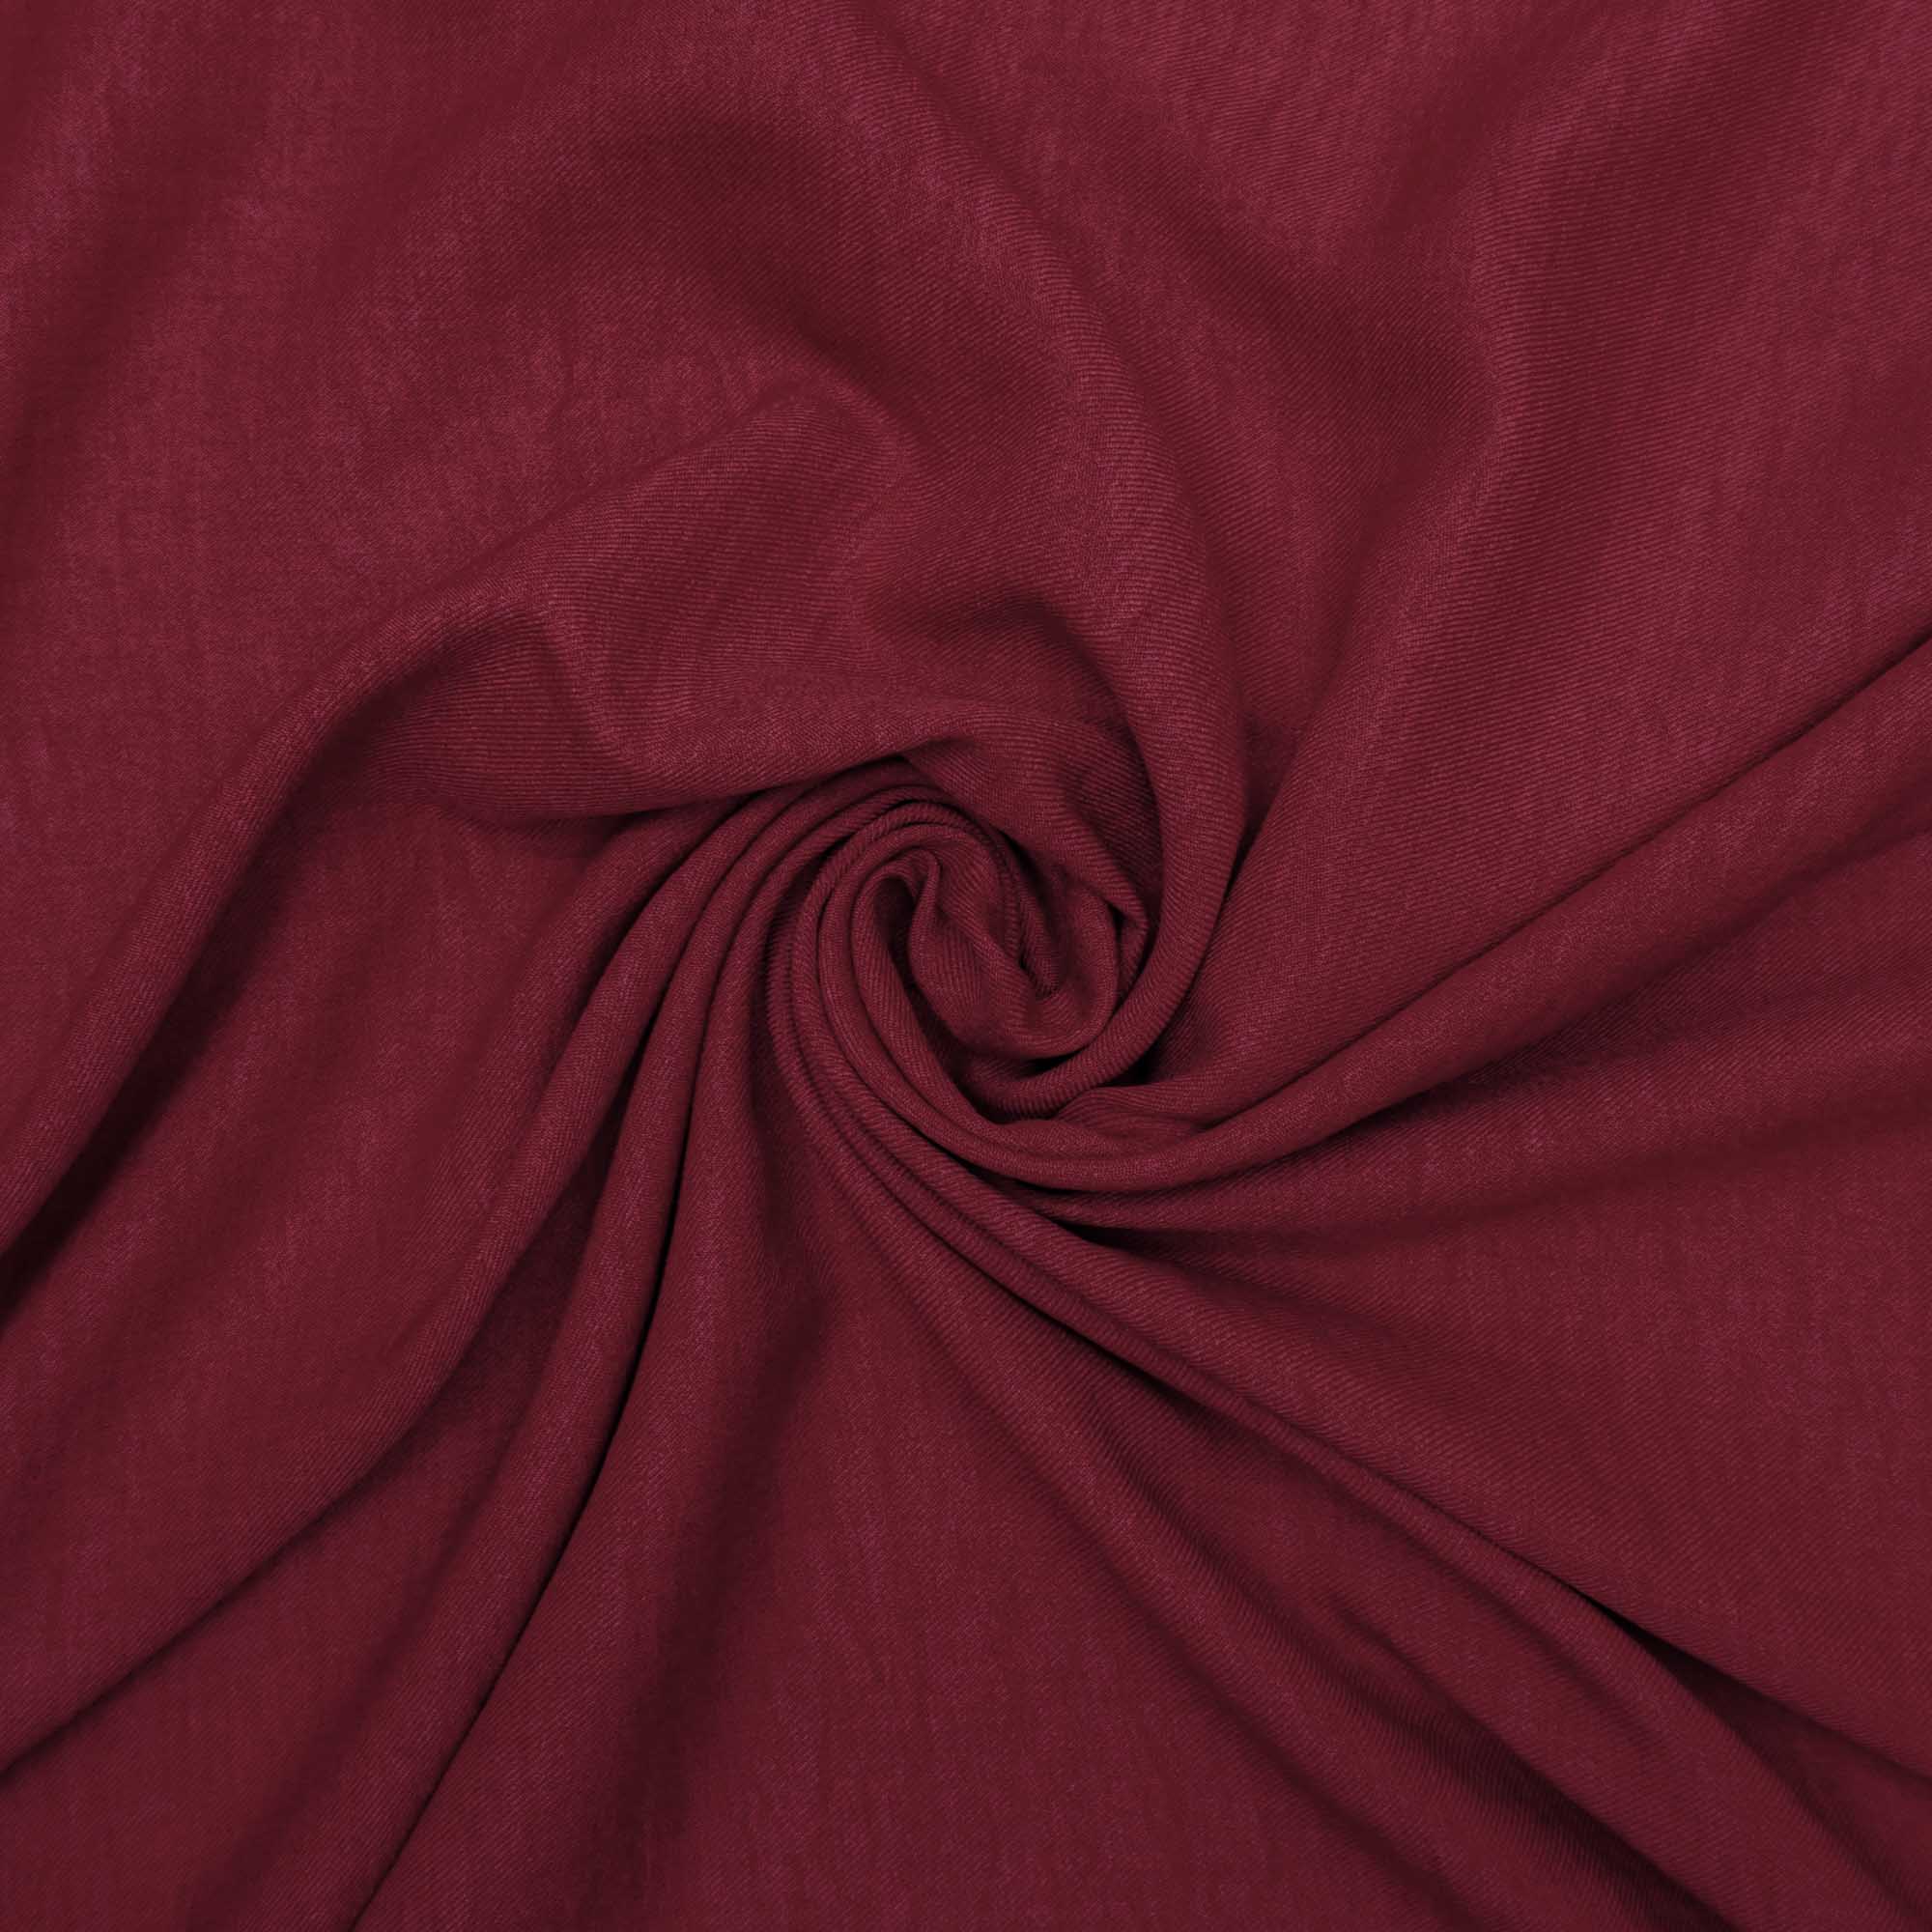 Tecido alfaiataria com textura de linho vermelho cereja